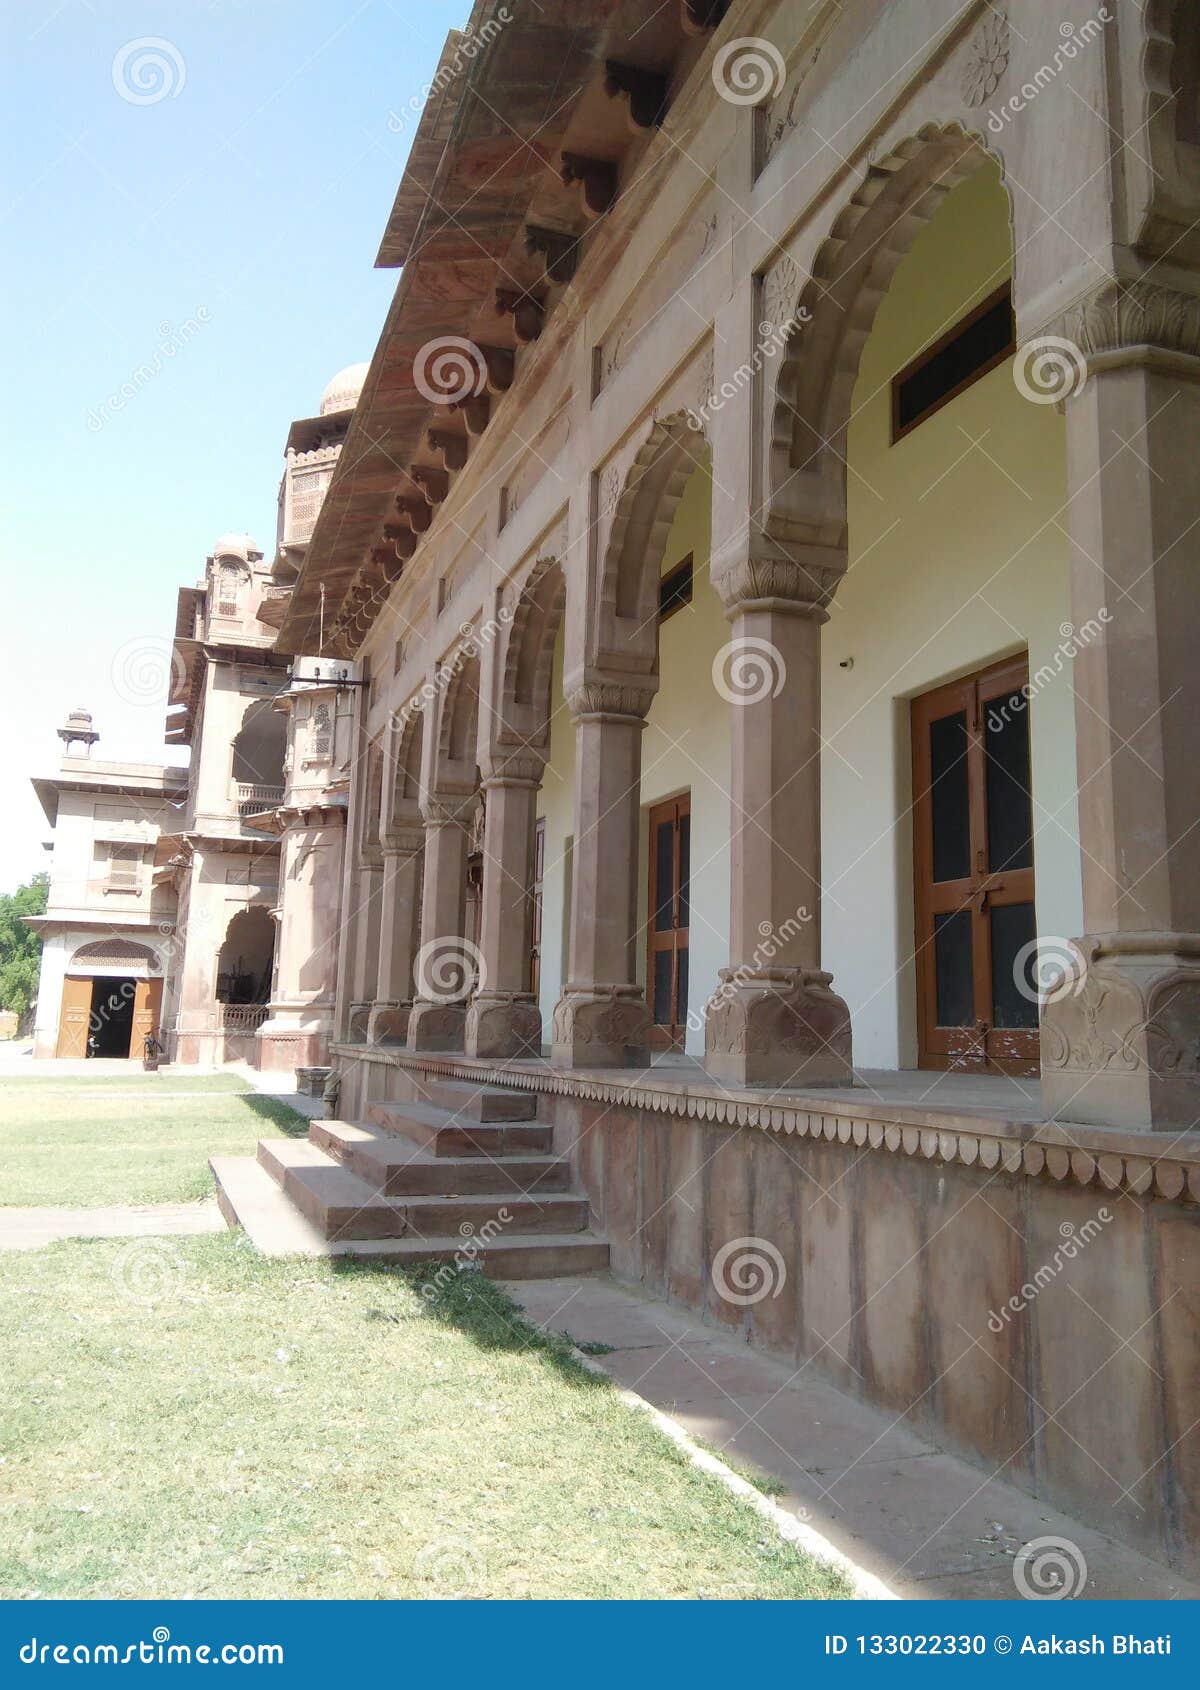 junagarh fort of bikaner district picture